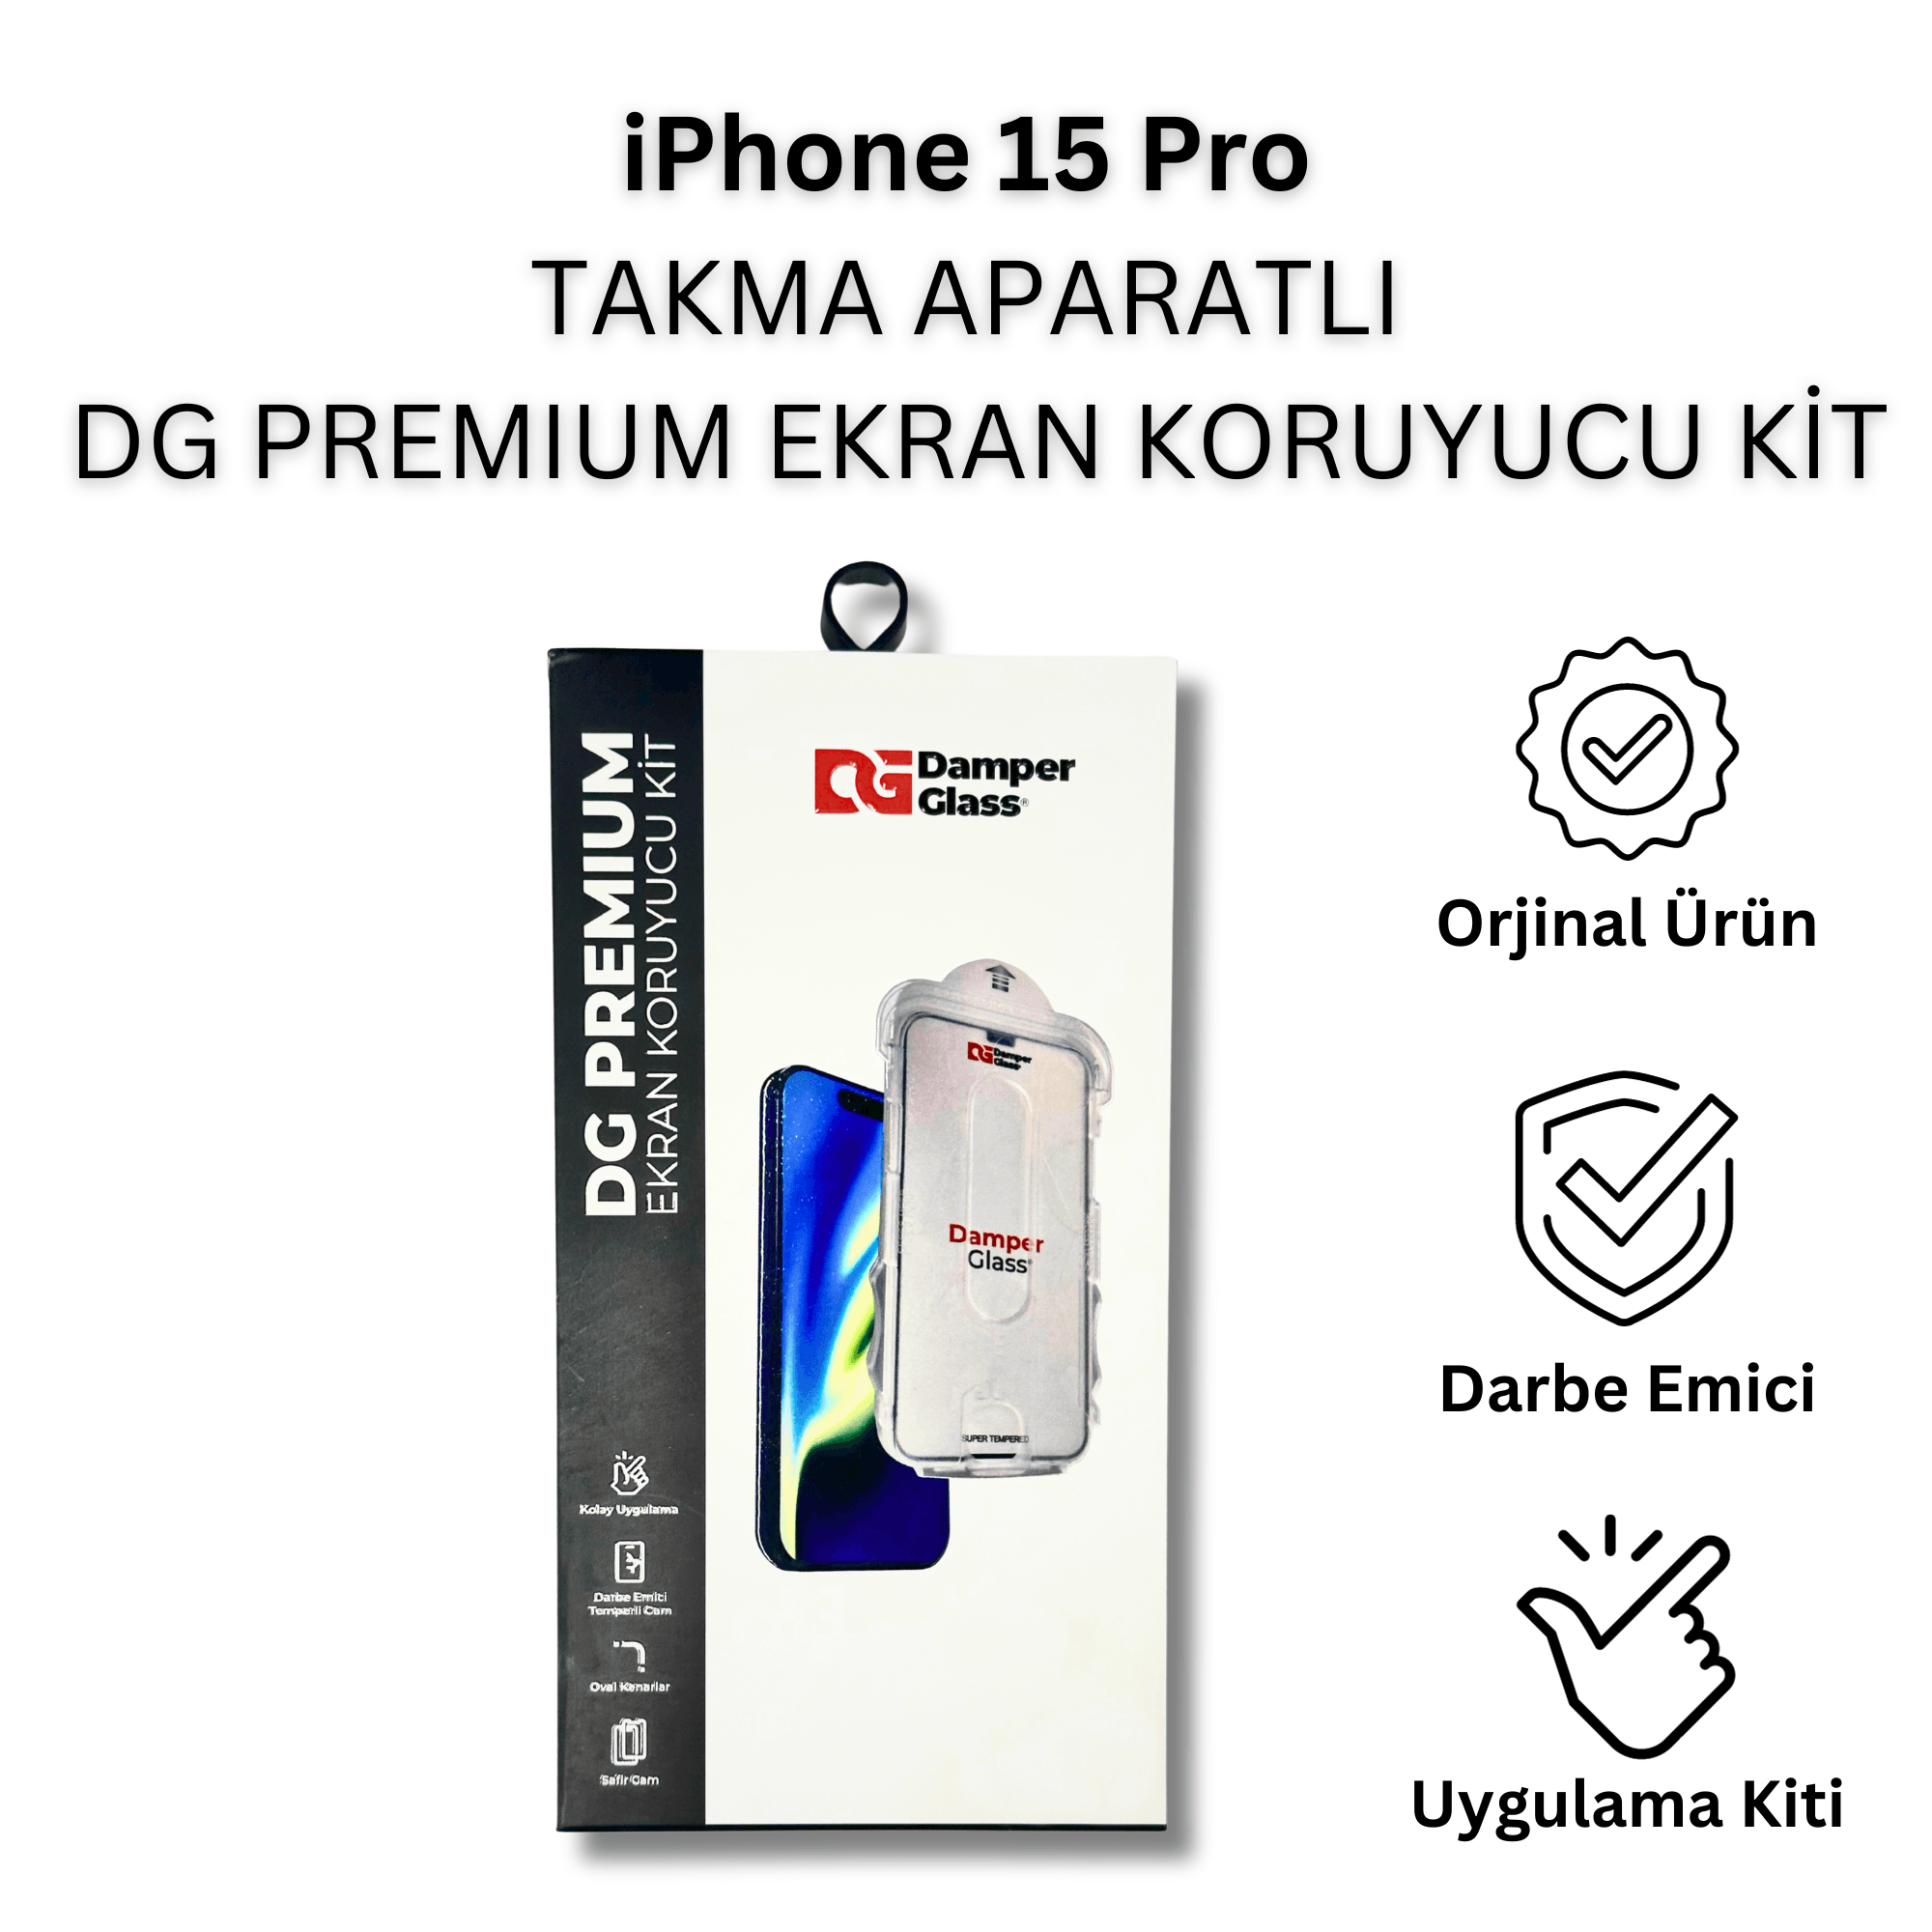 iPhone 15 Pro DG Premium Takma Aparatlı Darbe Emici Ekran Koruyucu Kit